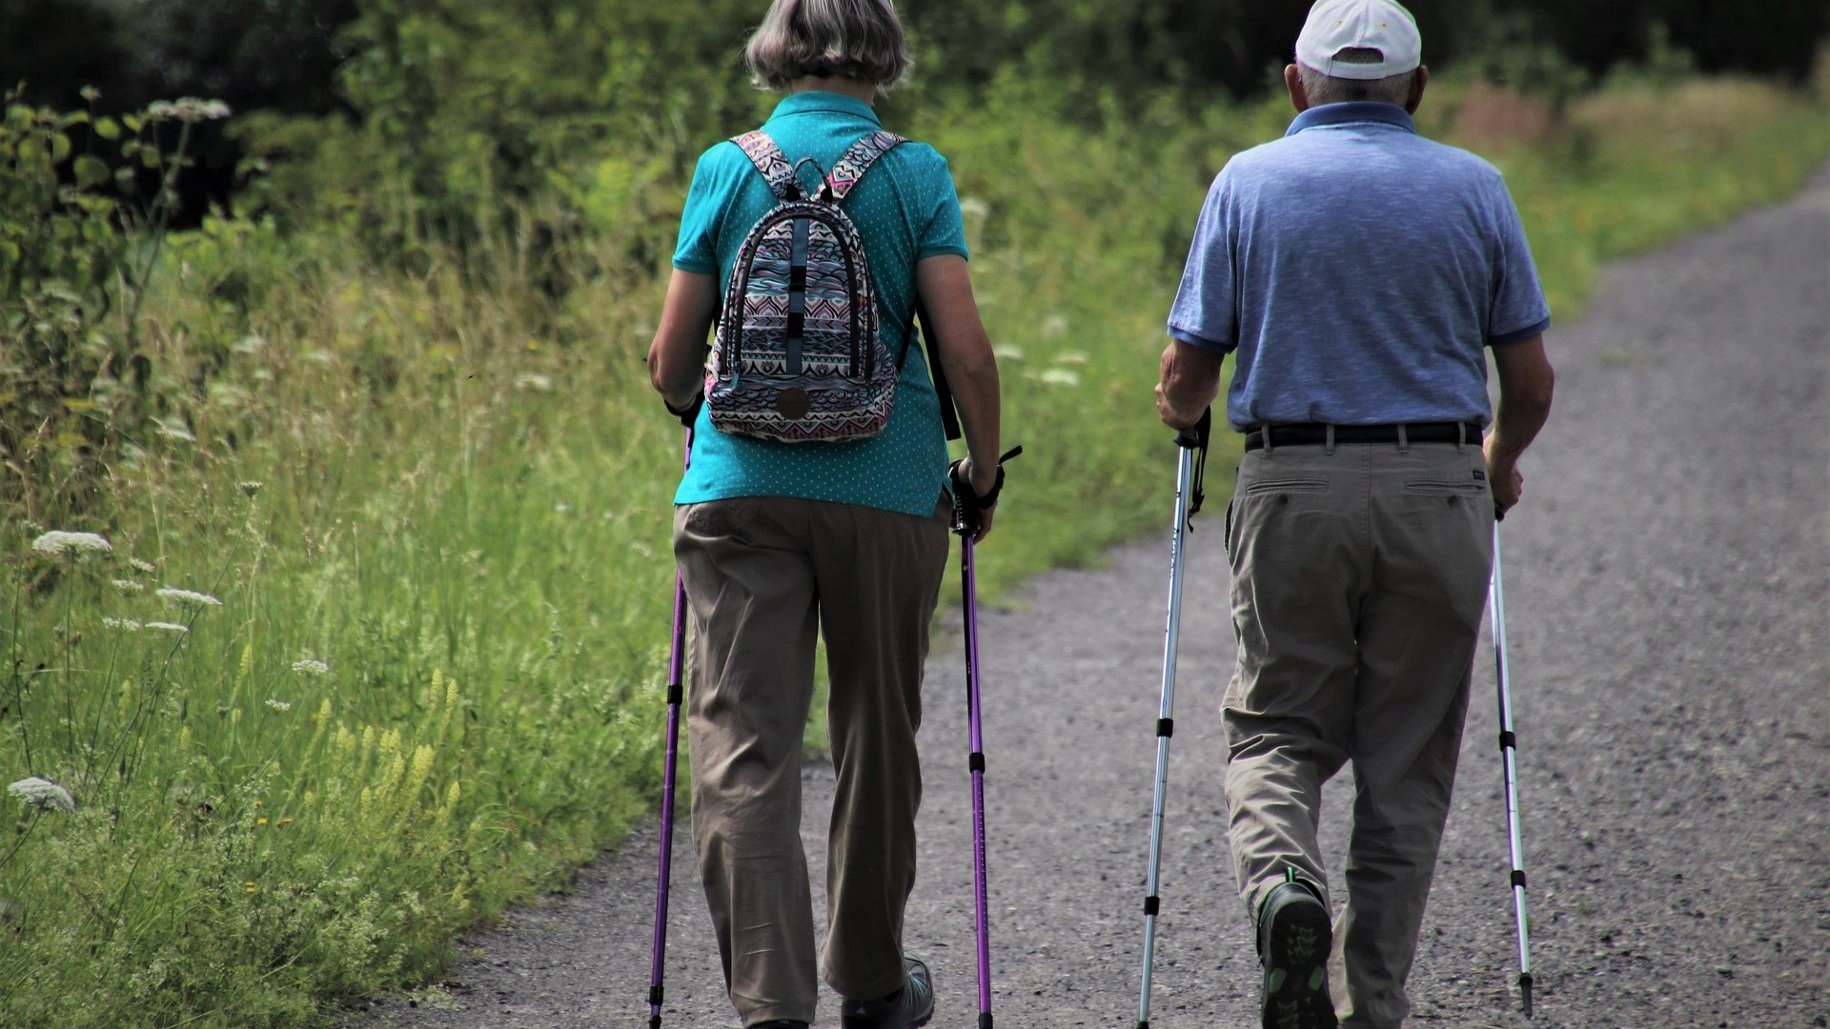 Na zdjęciu dwoje starszych ludzi, tyłem do obiektywu, maszerują z kijkami do nordic walking